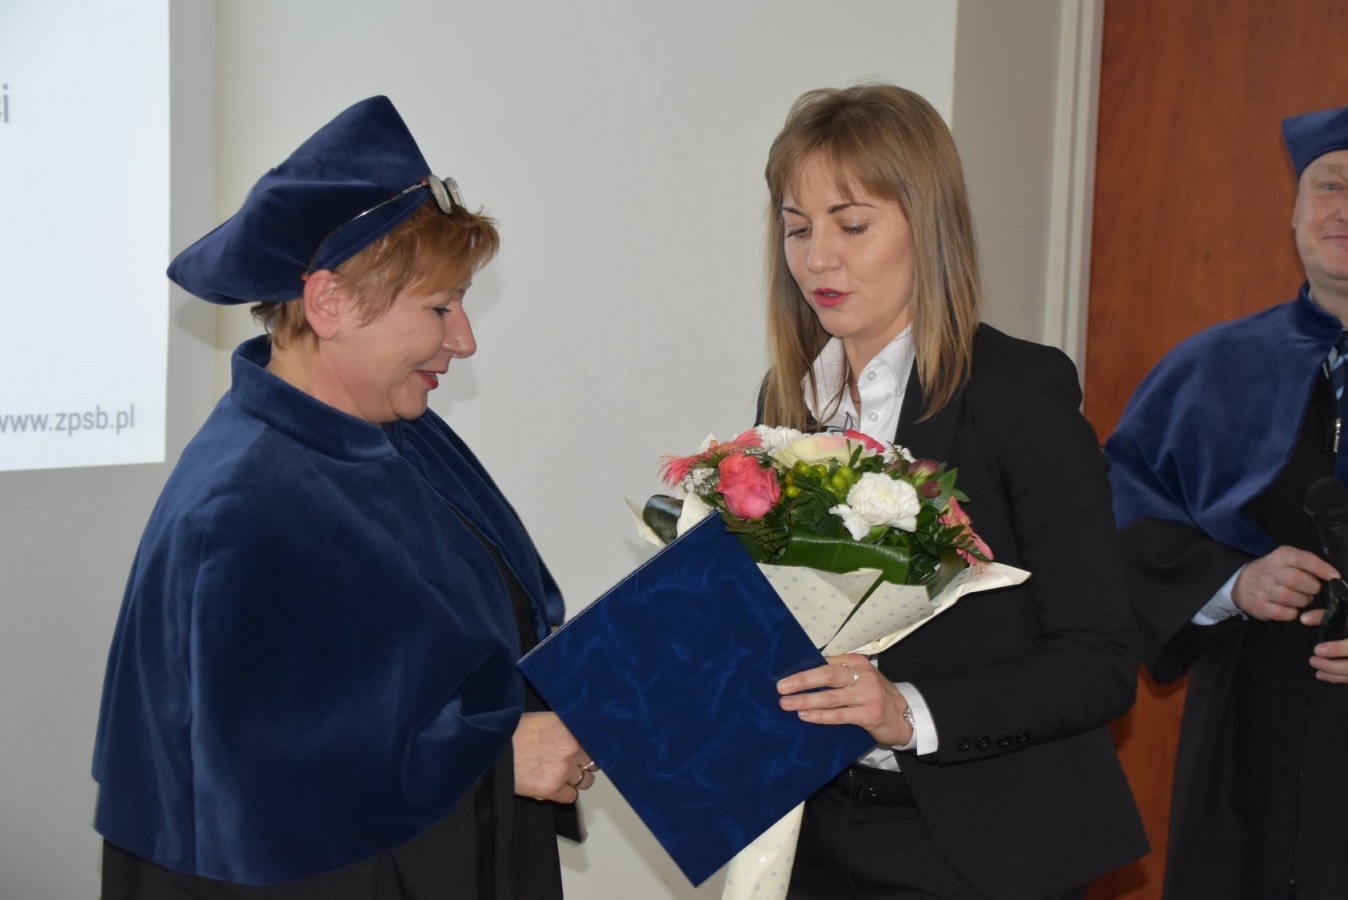 Inauguracja roku akademickiego 2019/2020 ZPSB w Gryficach